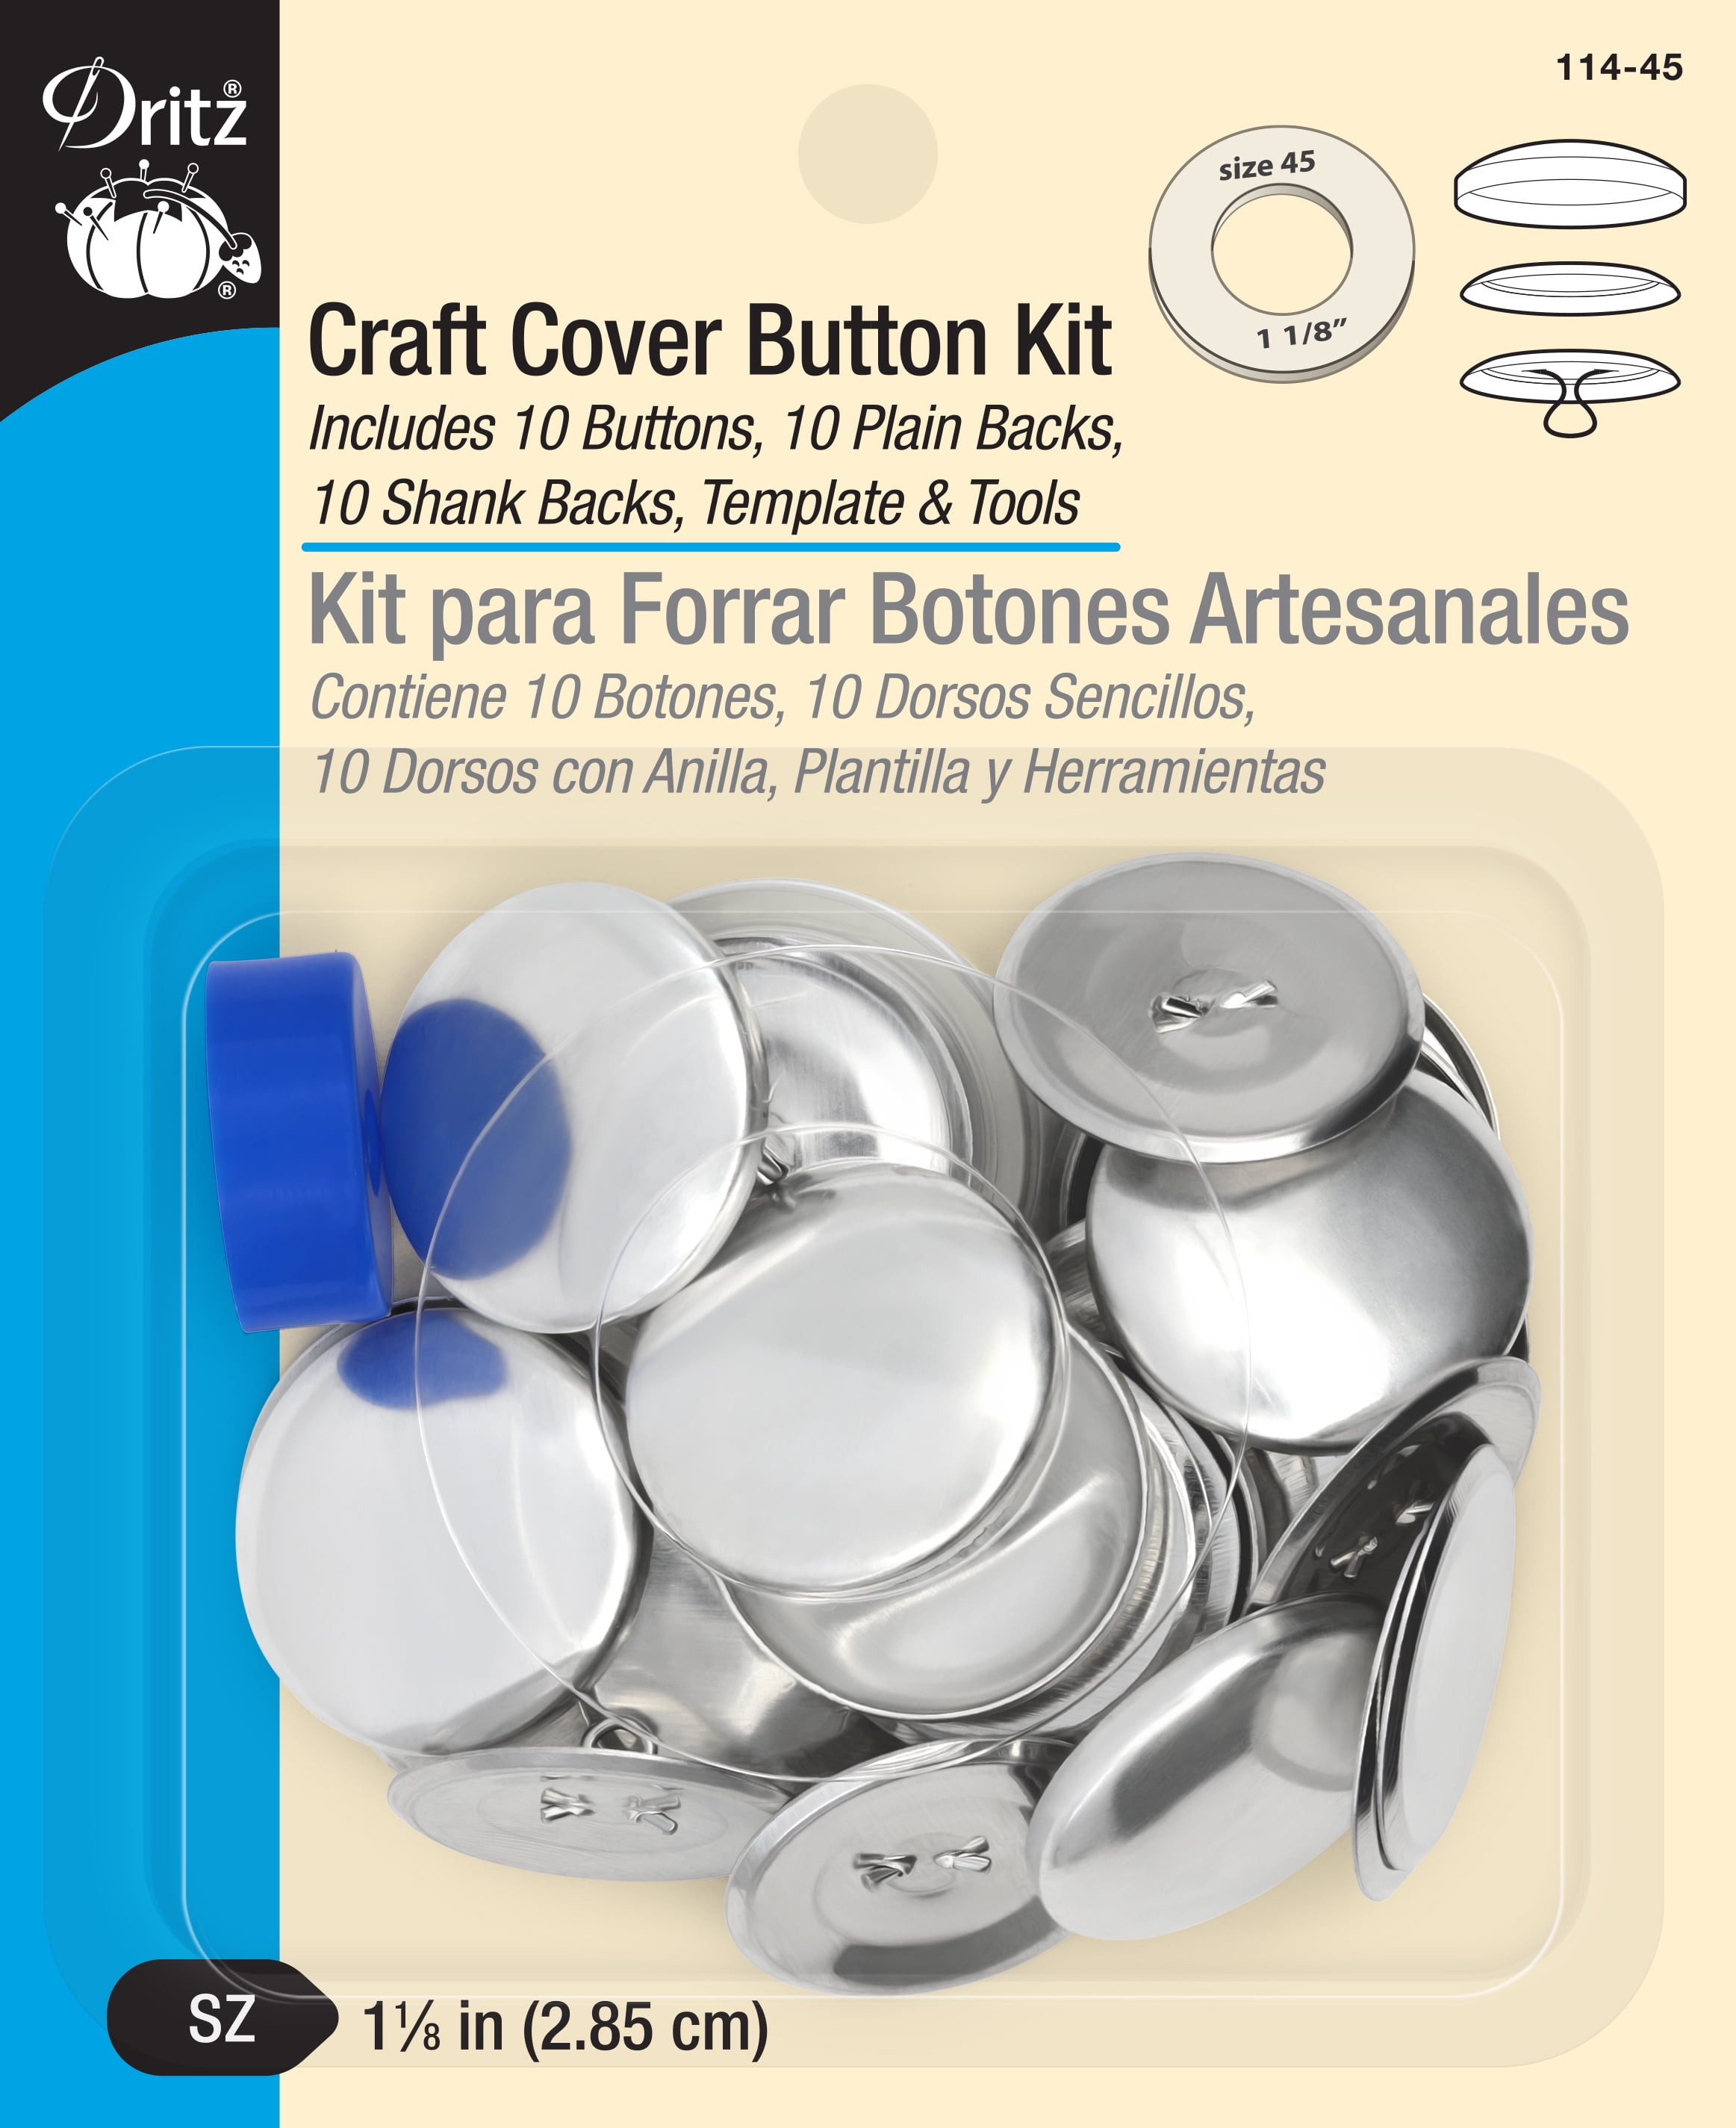 Cover Button Refill – Gkstitches